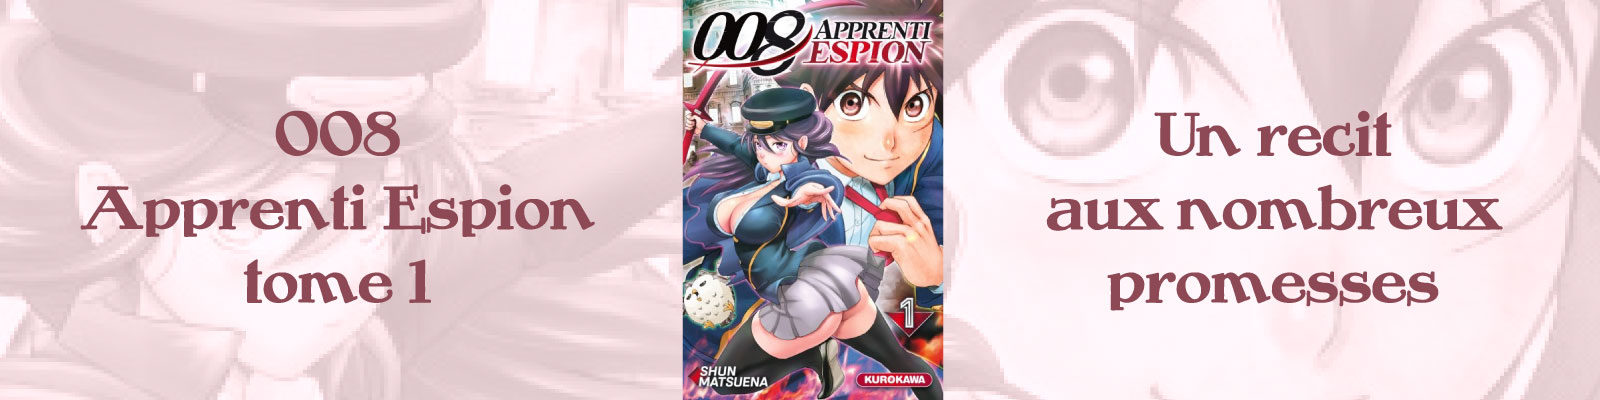 008 Apprenti Espion-Vol.-1